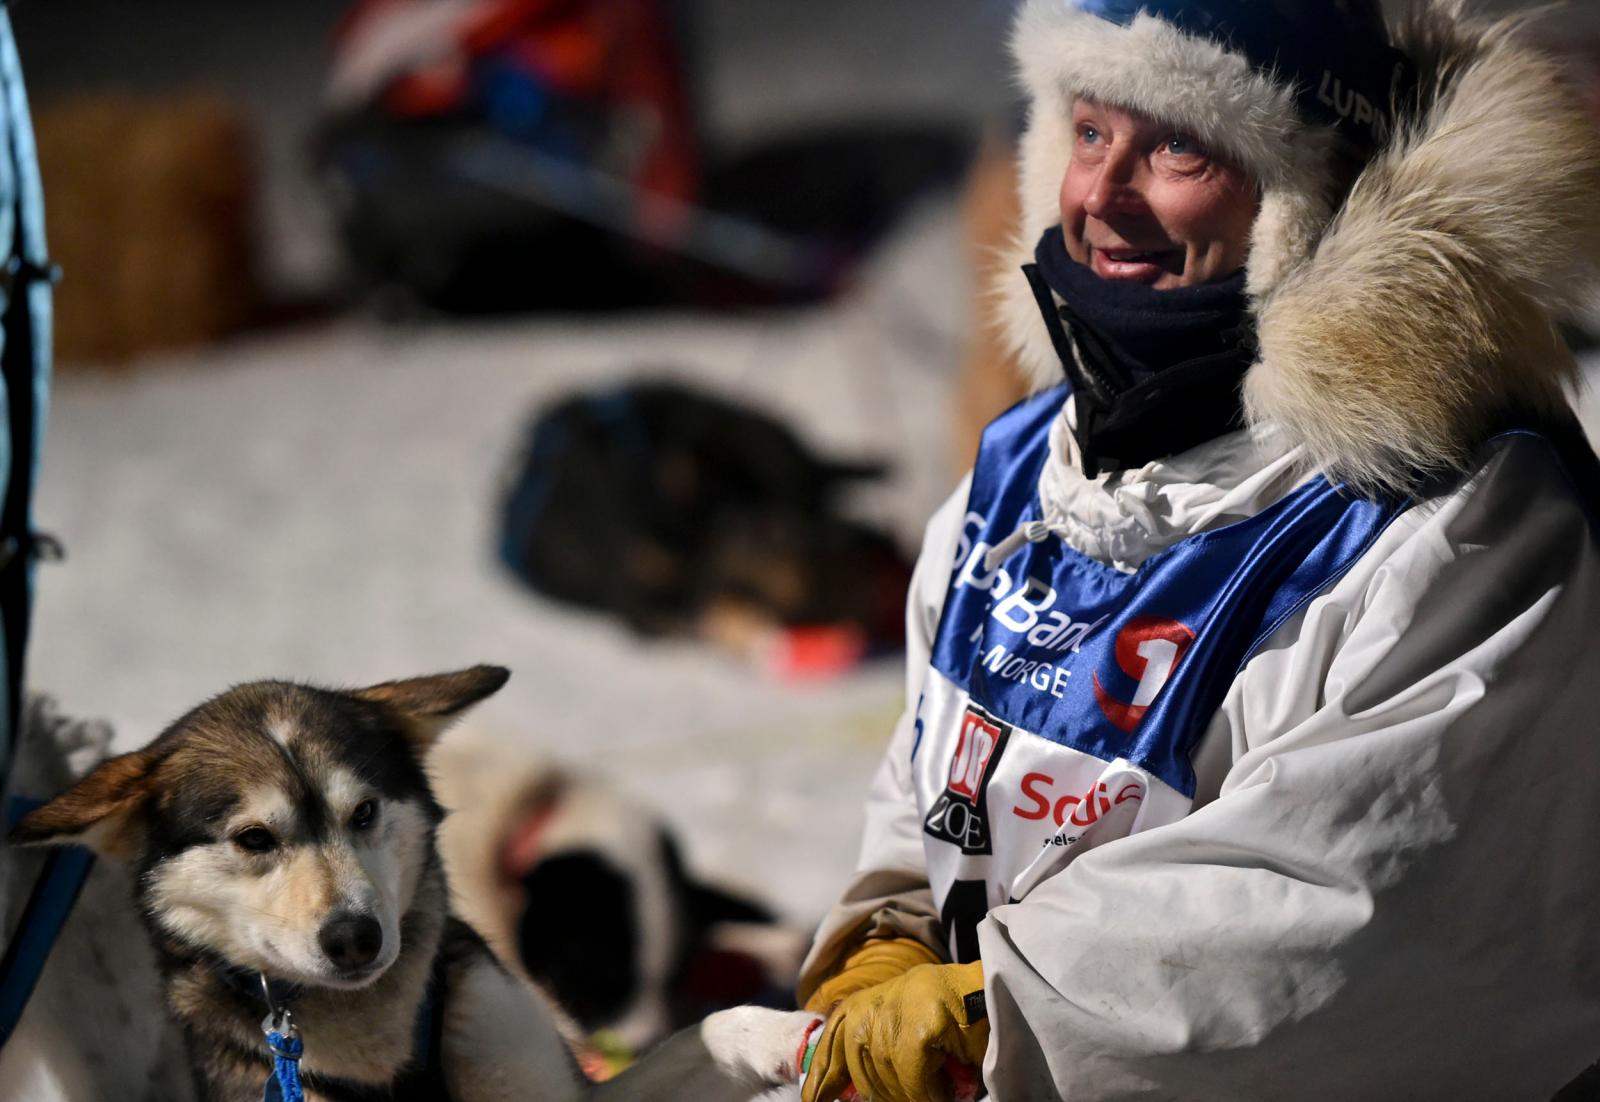 RALPH JOPHANNESSEN under Finnmarksløpet 2015, foto av Dmitry Sharomov.